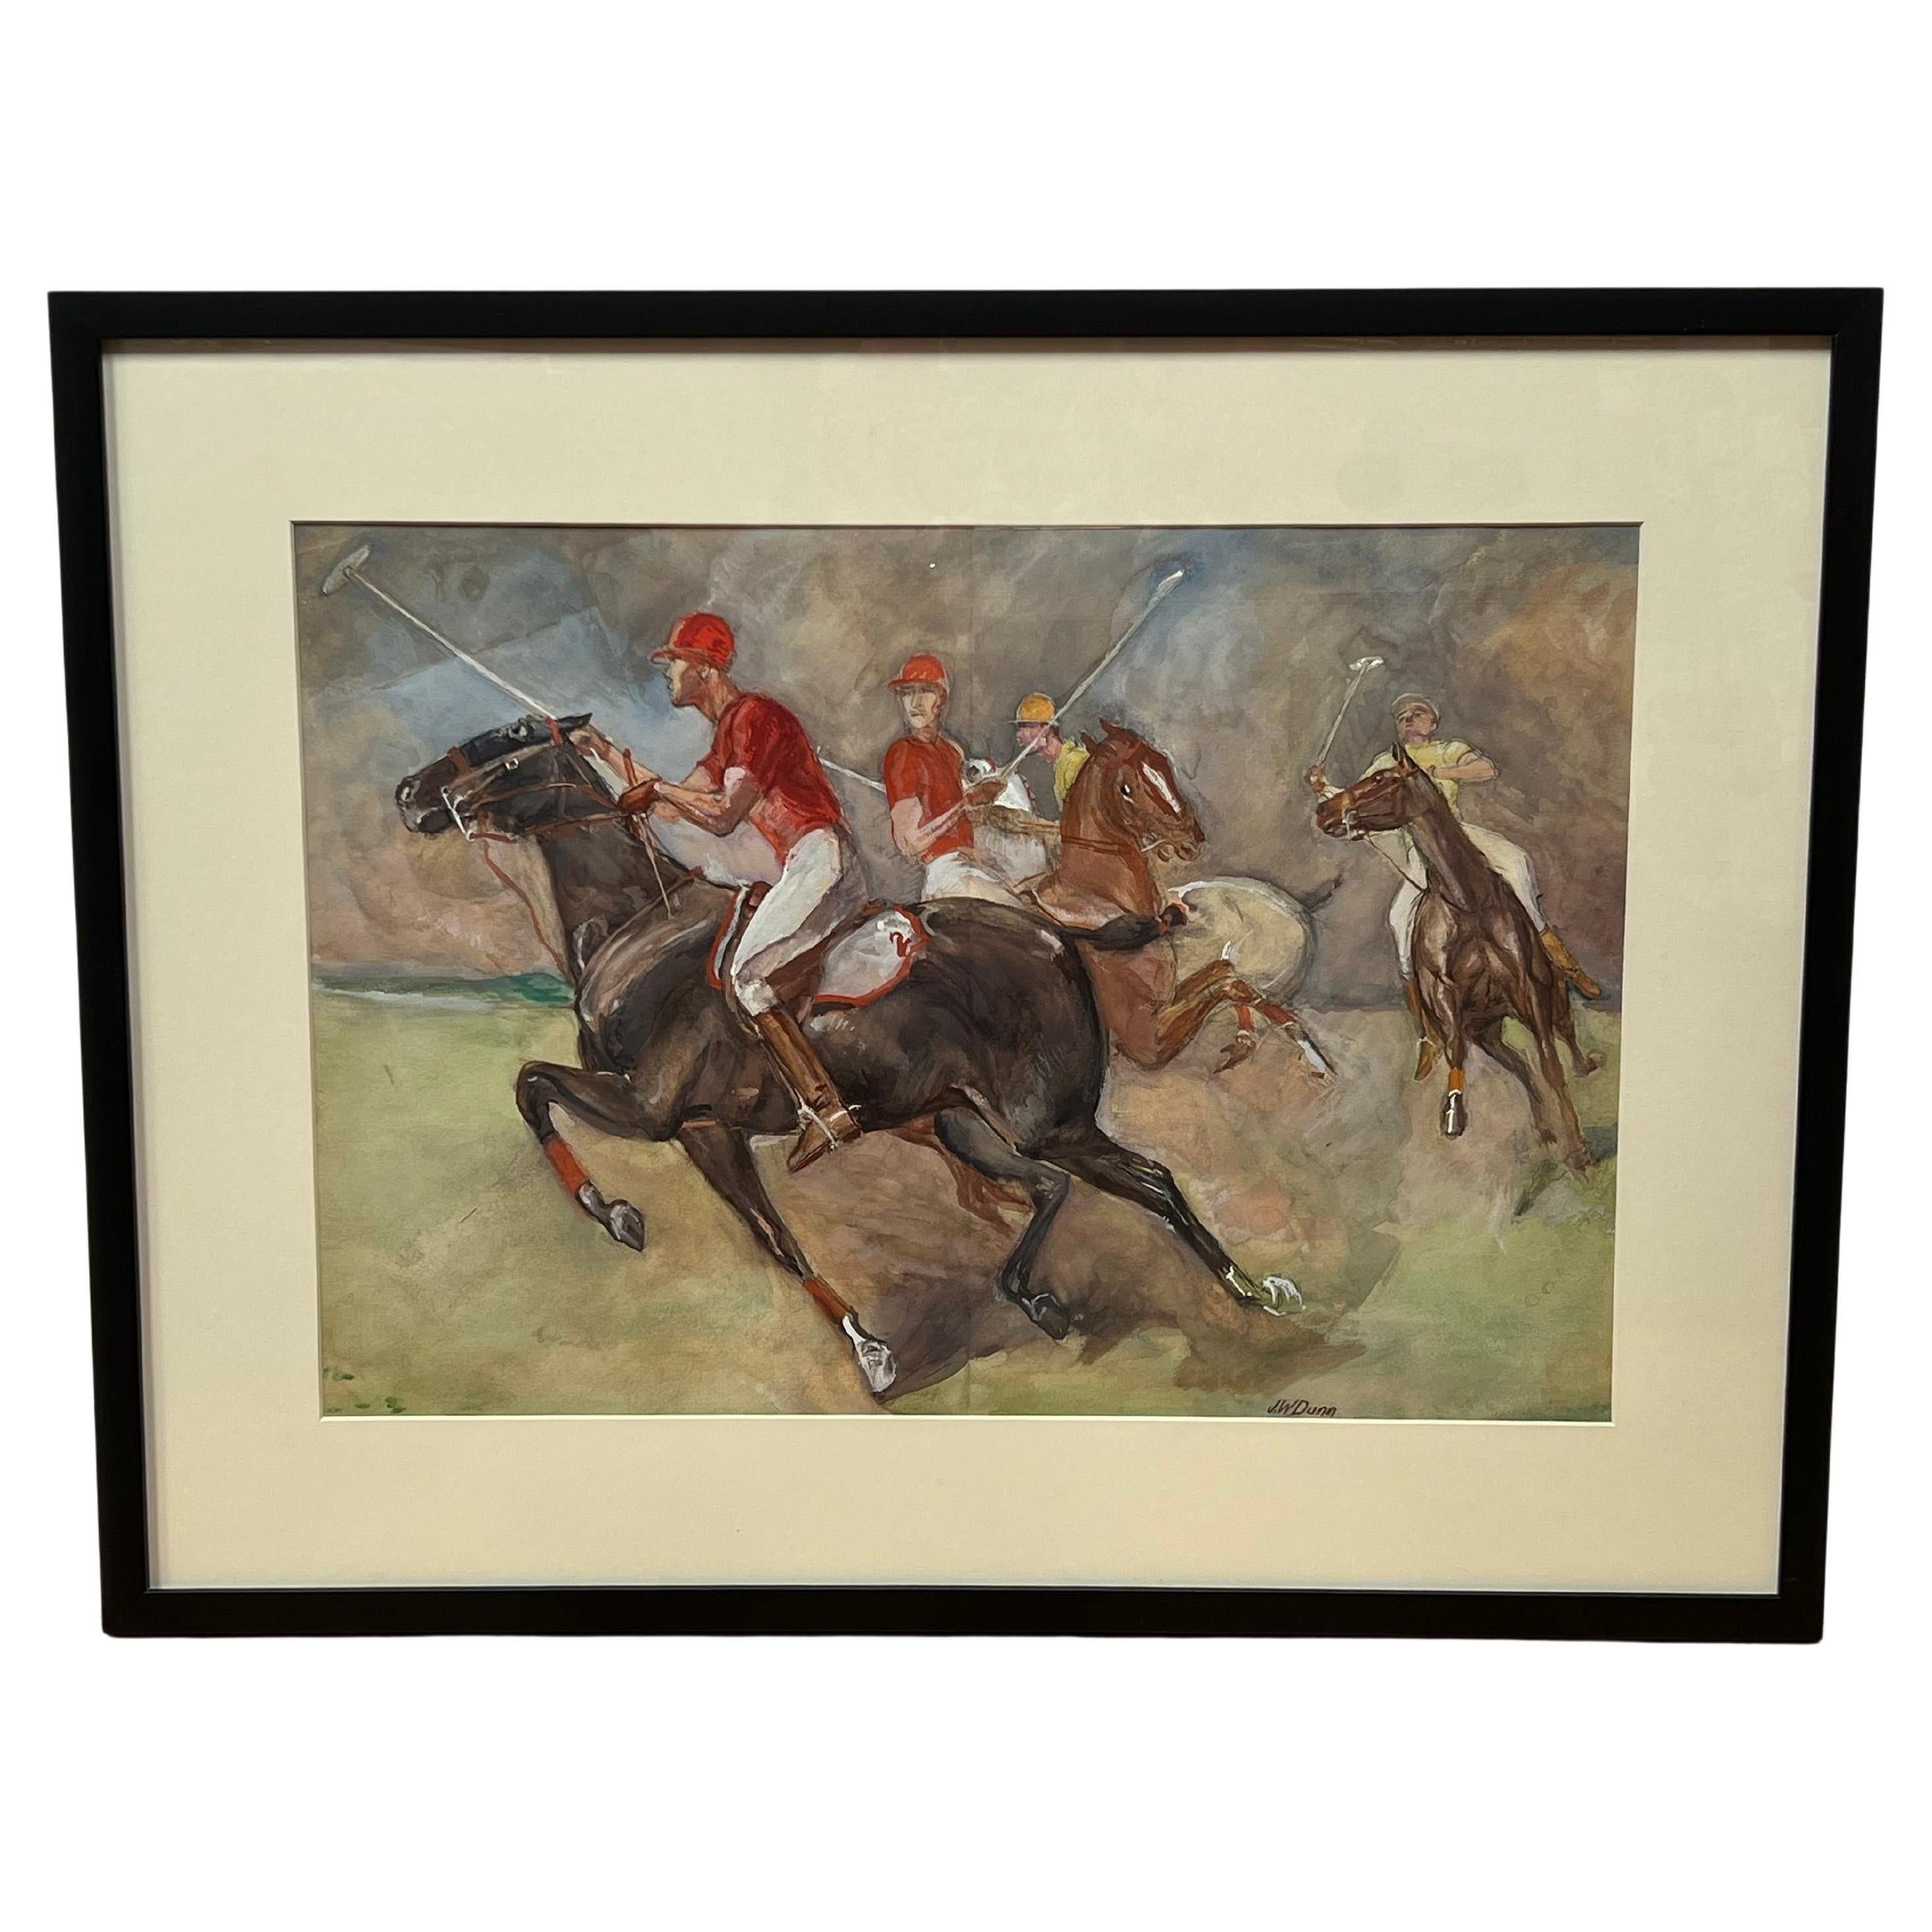 Dieses gerahmte Aquarell  ist unten rechts von dem amerikanischen Künstler J.W. signiert. Dunn.

Es zeigt ein spannendes Polospiel zu Pferde aus den 1930er Jahren mit vier Reitern in traditionellen Polo-Uniformen. Ein Team trägt rote Kleidung, das